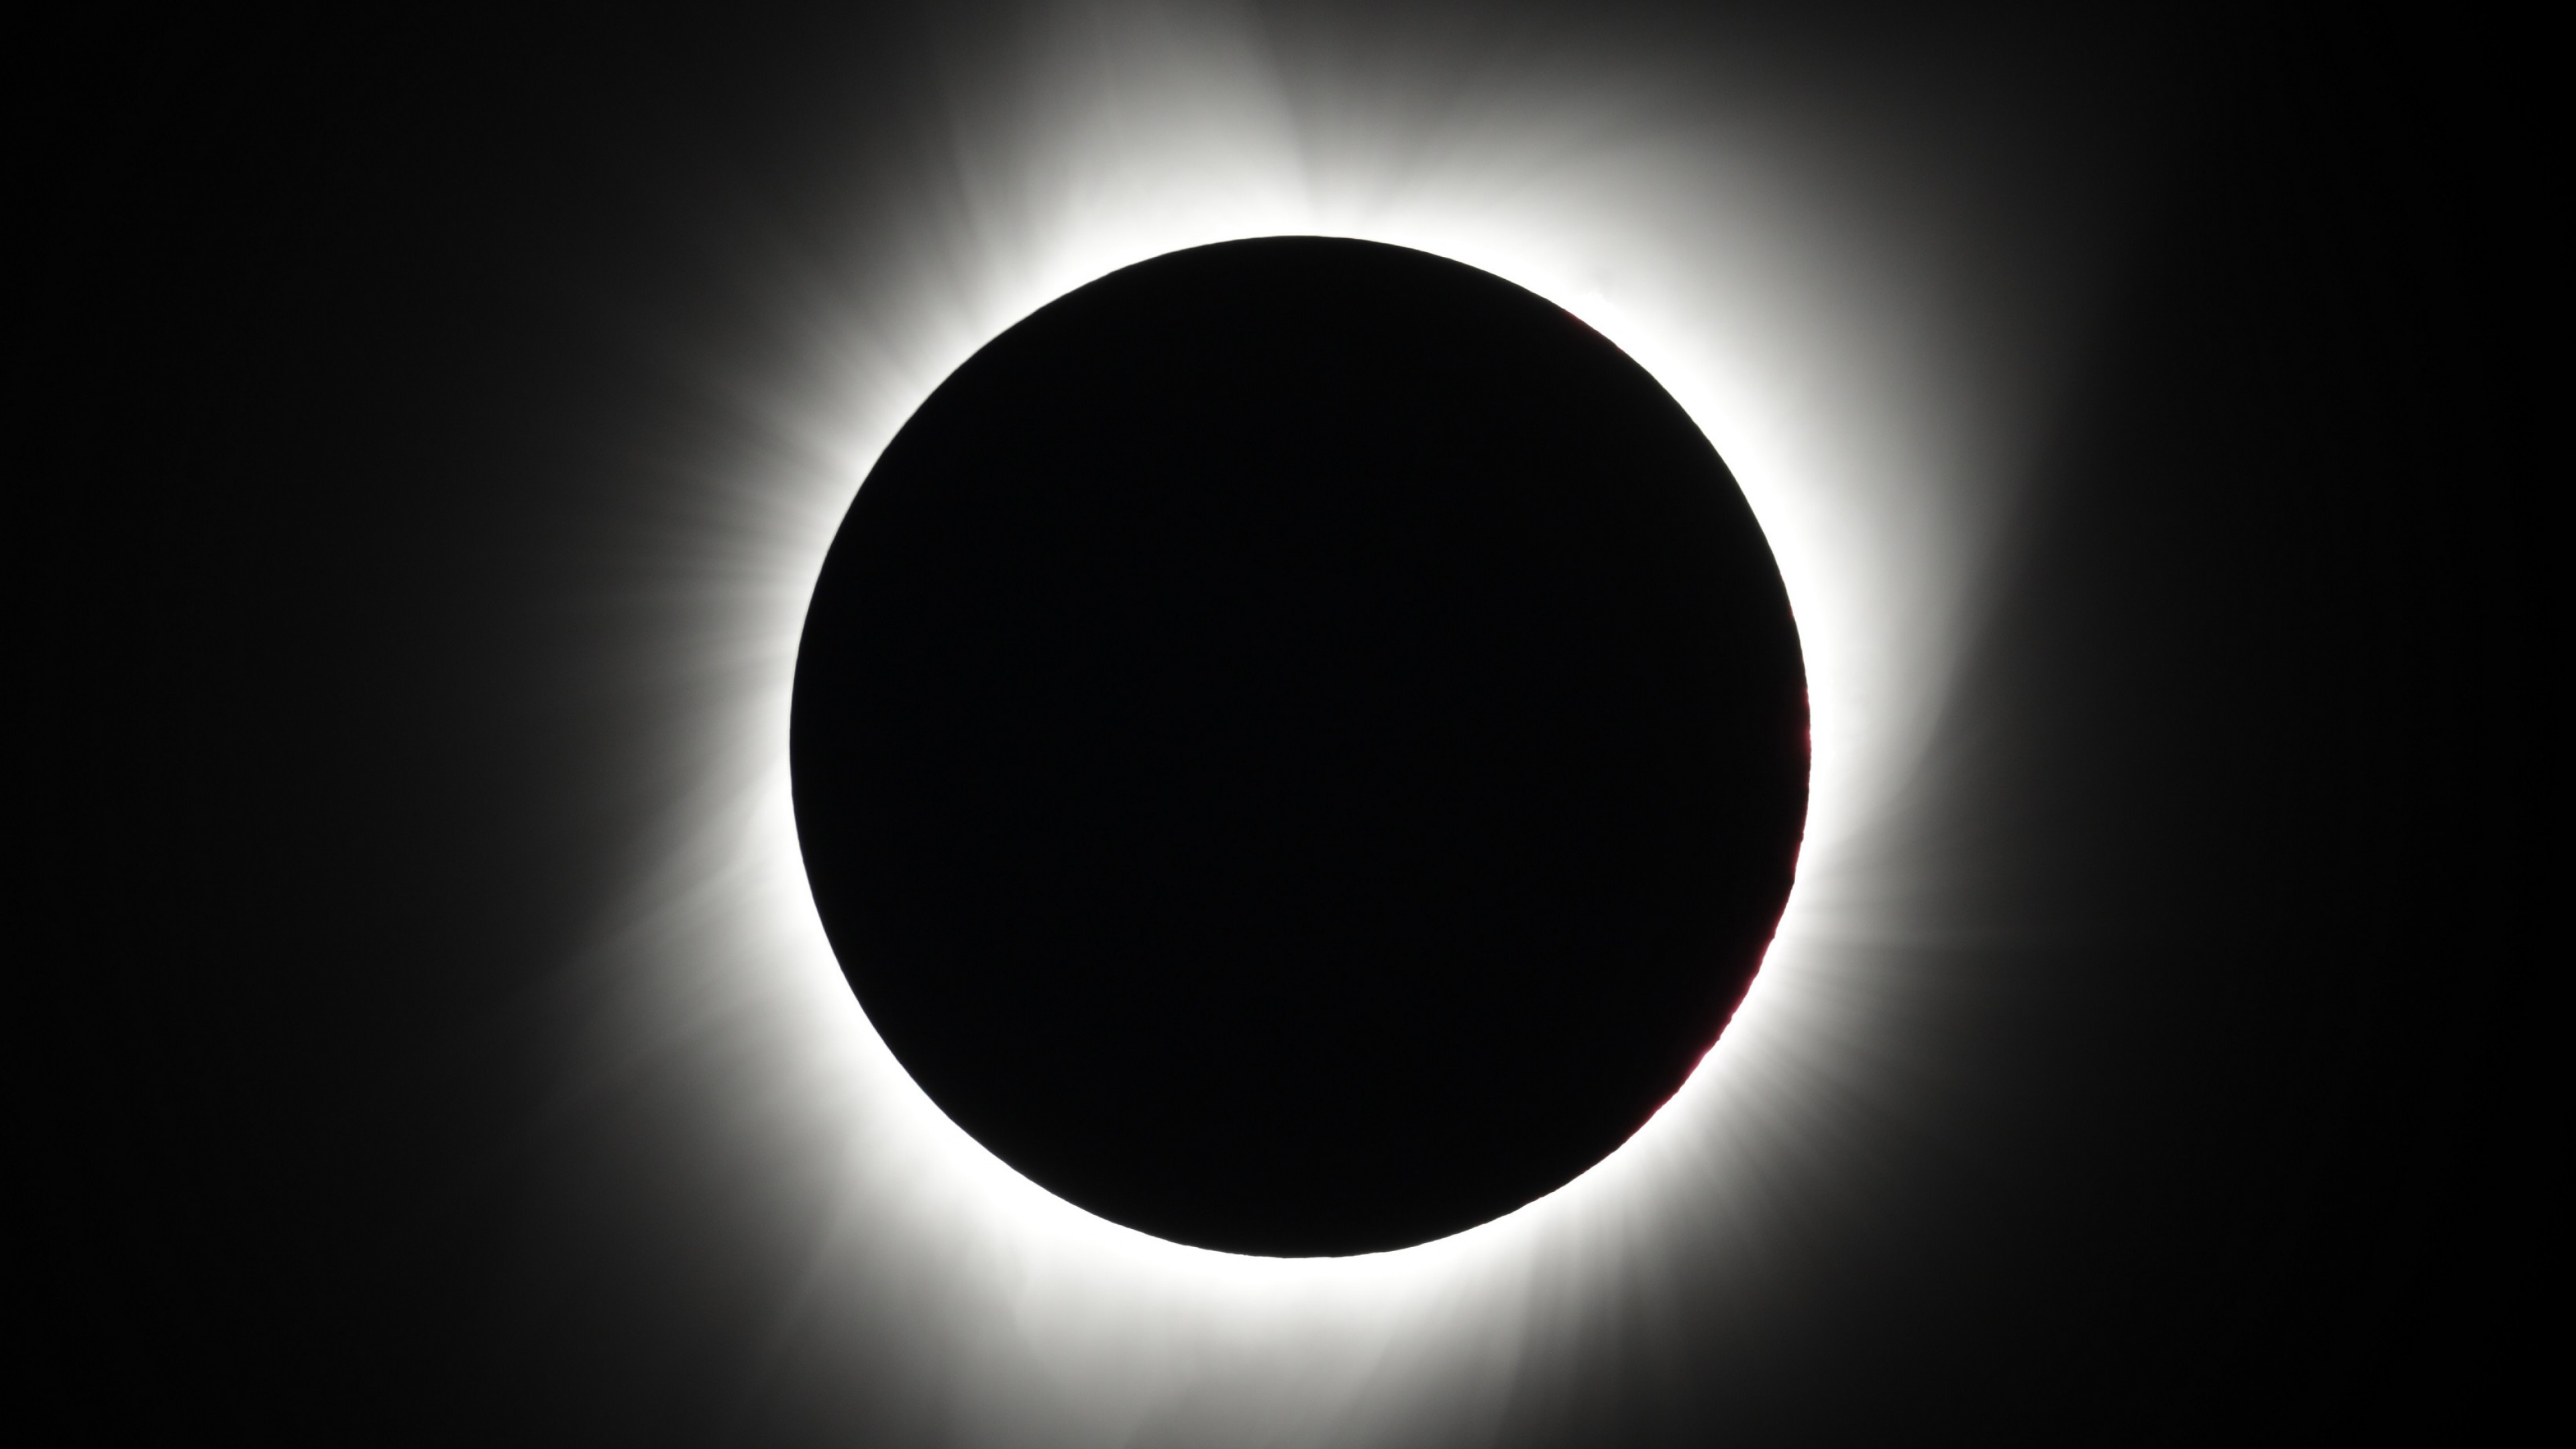 Fondos de pantalla Eclipse Total en Digital